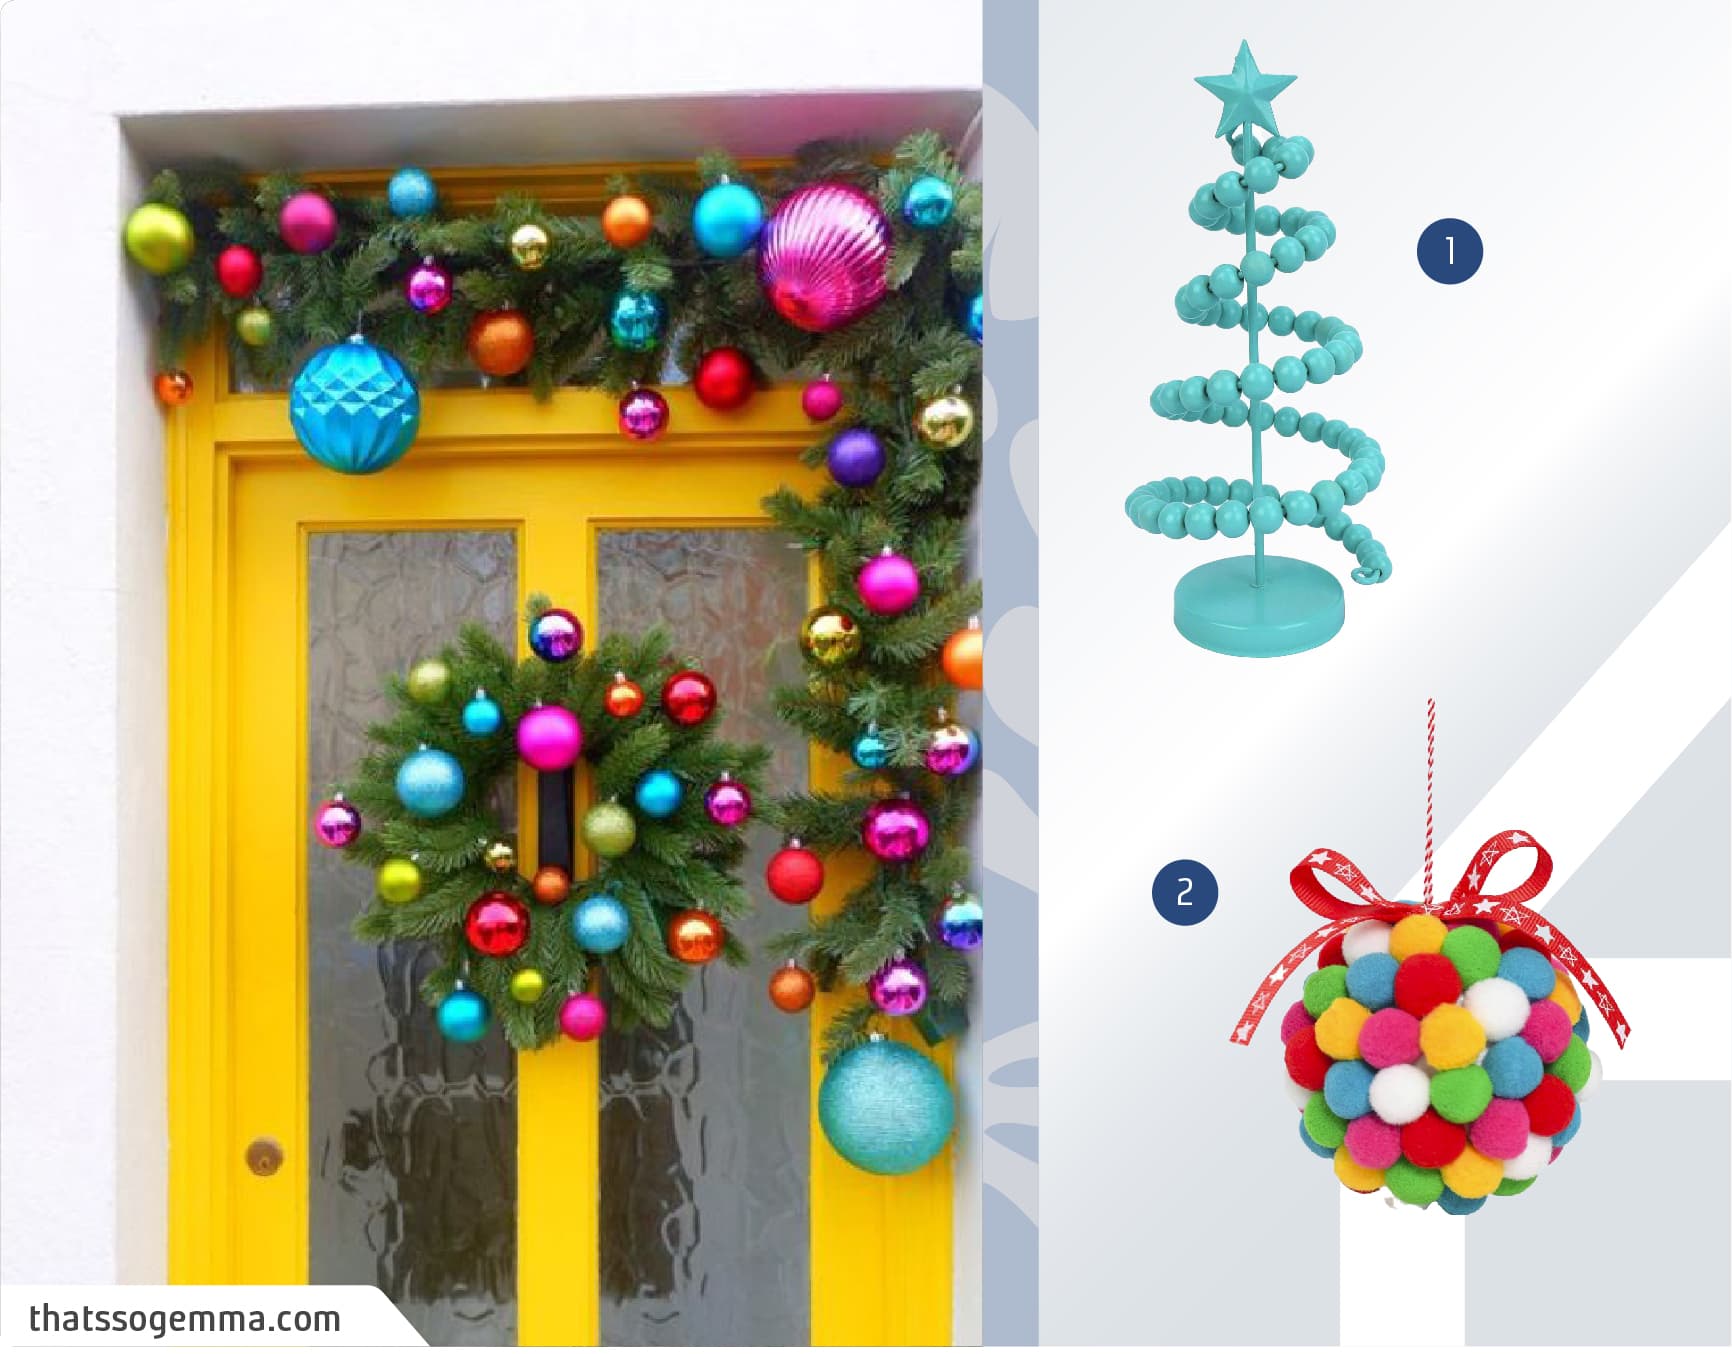 Puerta amarilla decorada con guirnaldas de pino y esferas de navidad multicolor junto a un moodboard de adornos navideños disponibles en Sodimac.